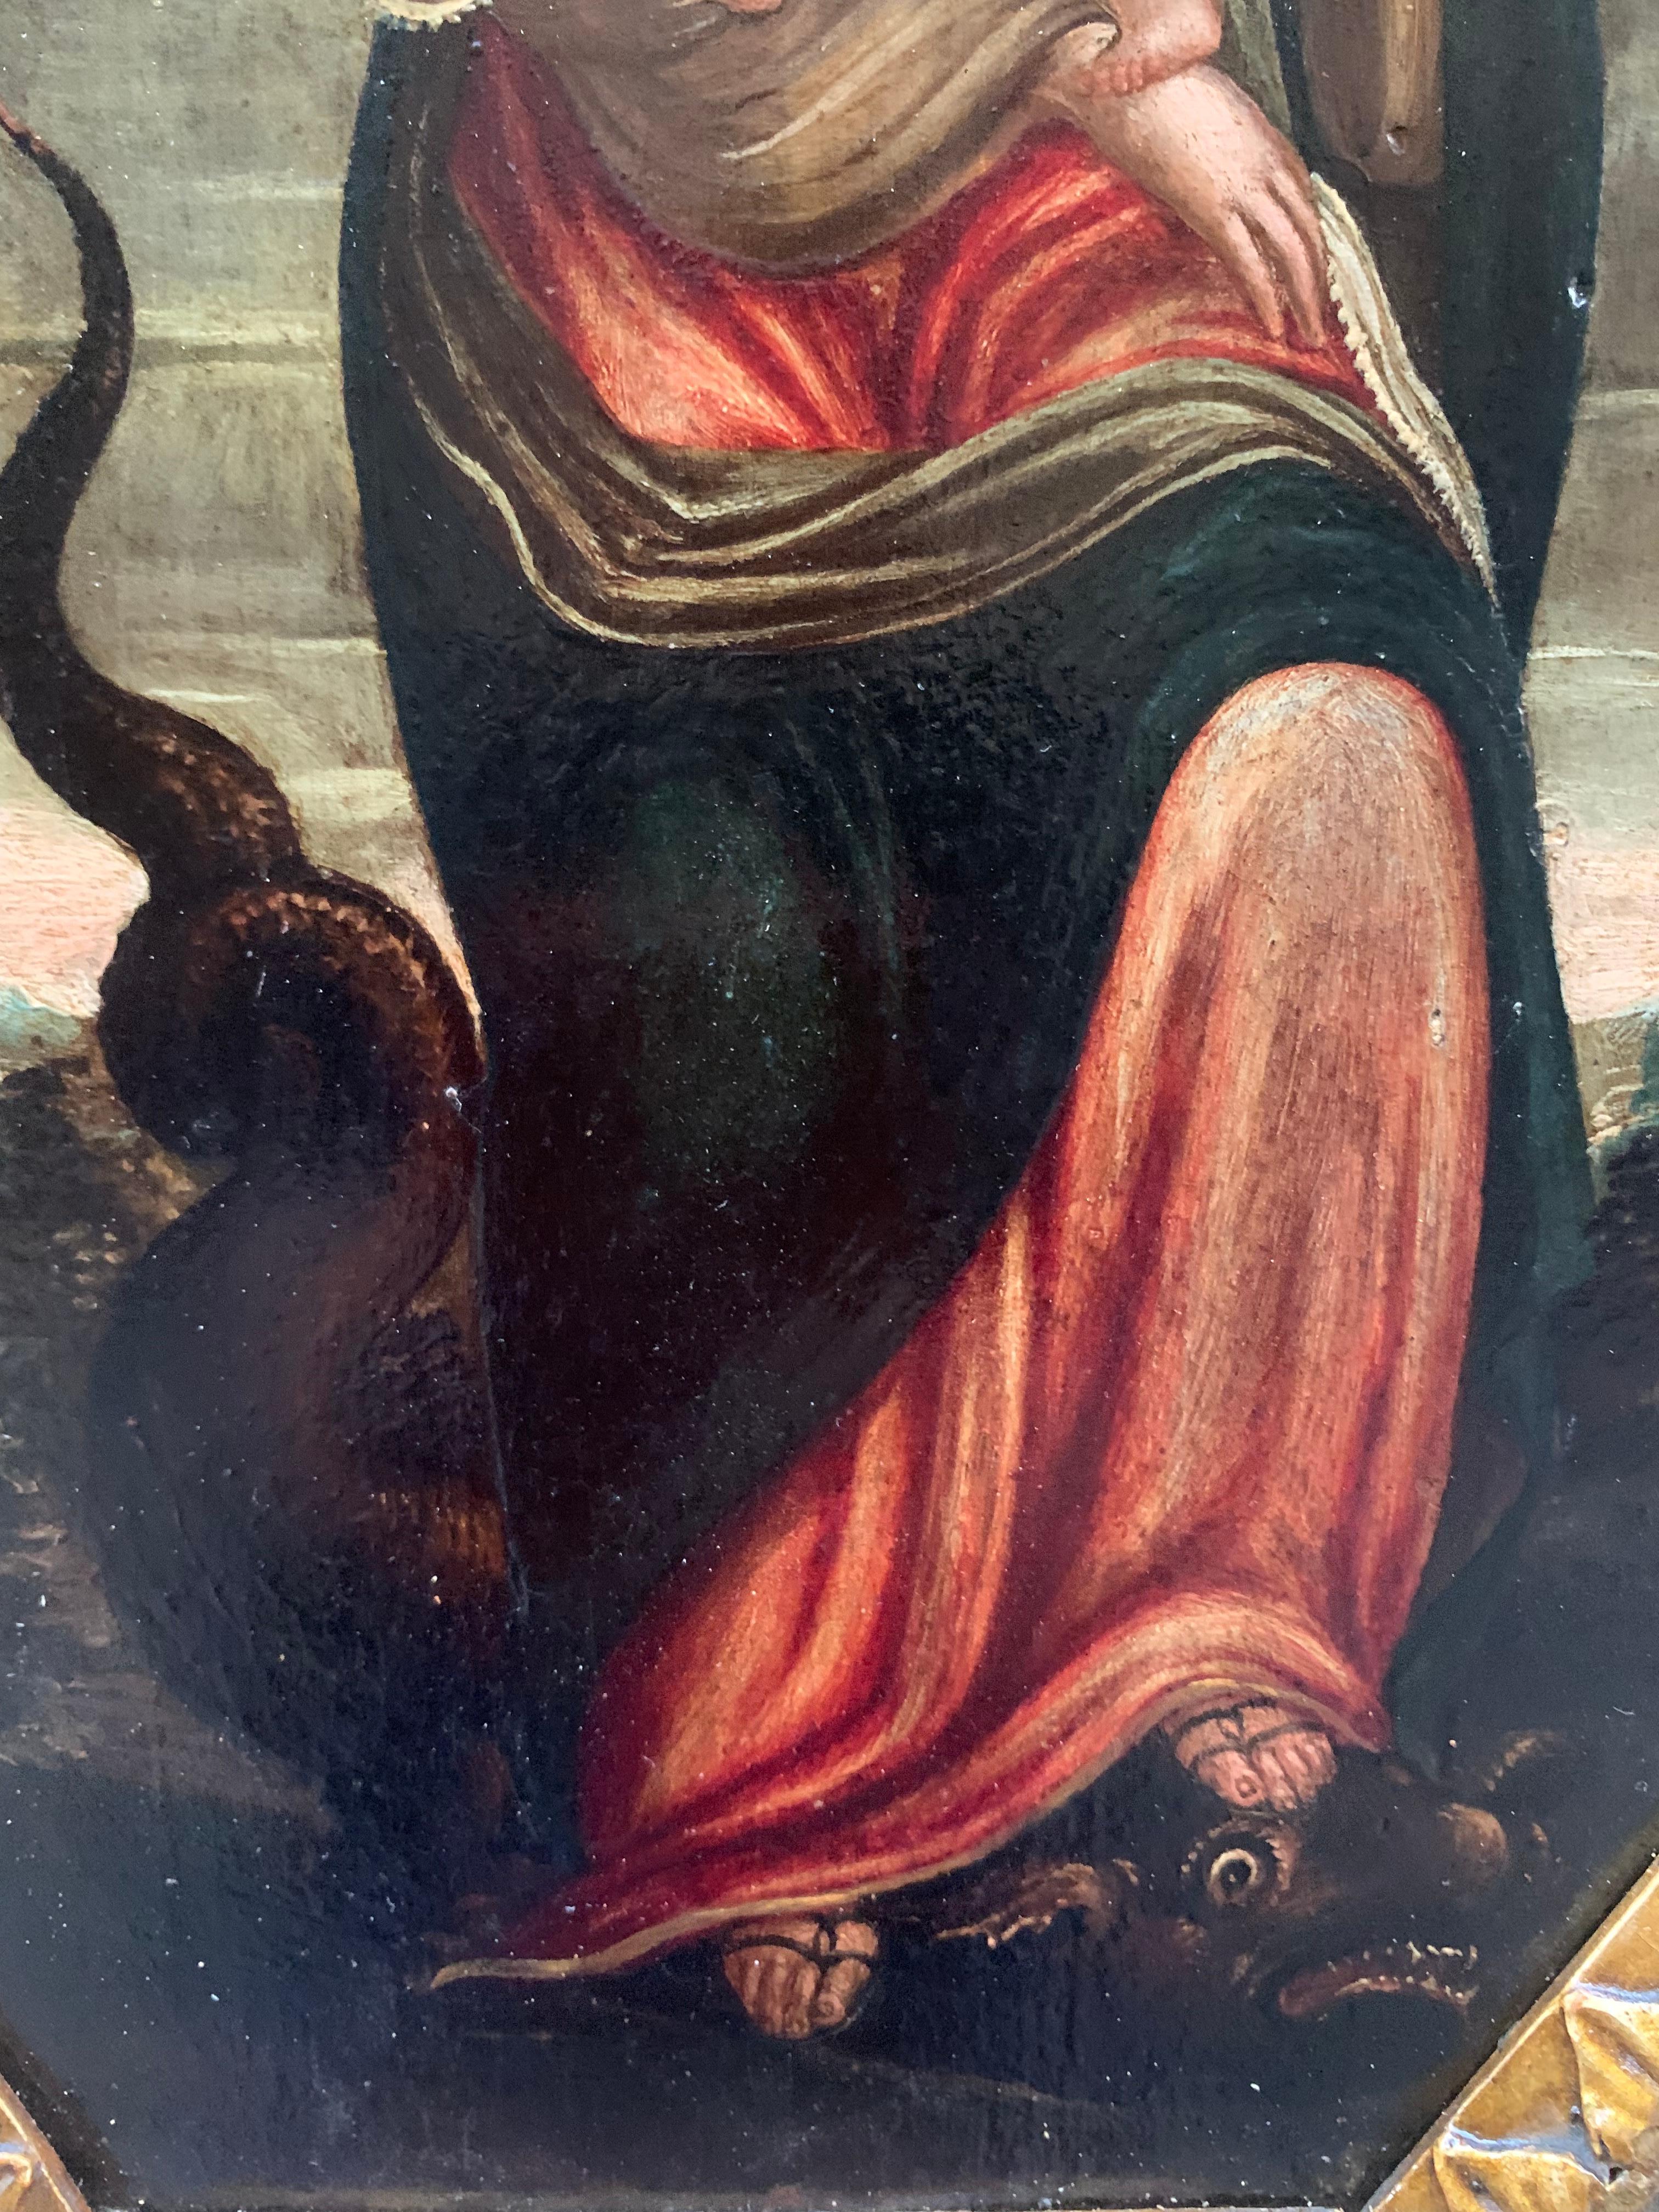 Ende des 16. Jahrhunderts. Unbefleckte Empfängnis. Jungfrau mit Kind und Drache. (Renaissance), Painting, von Unknown